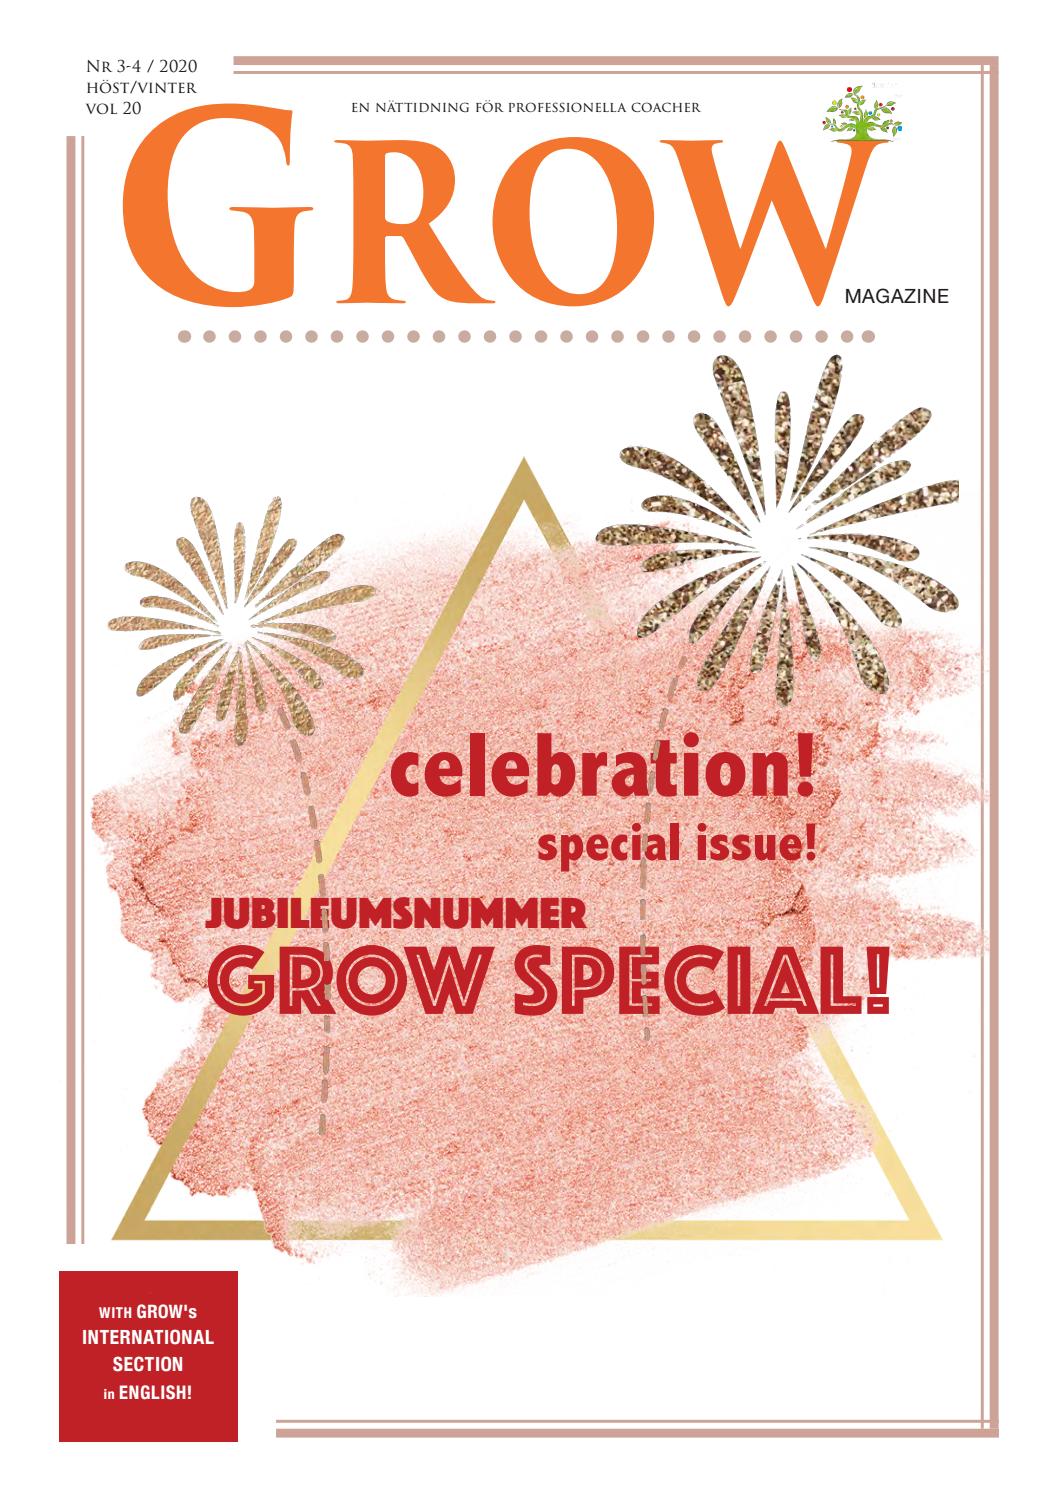 GROW magazine 3-4/2020 vol 20 — GROW Special! – det BÄSTA & MEST LÄSTA!